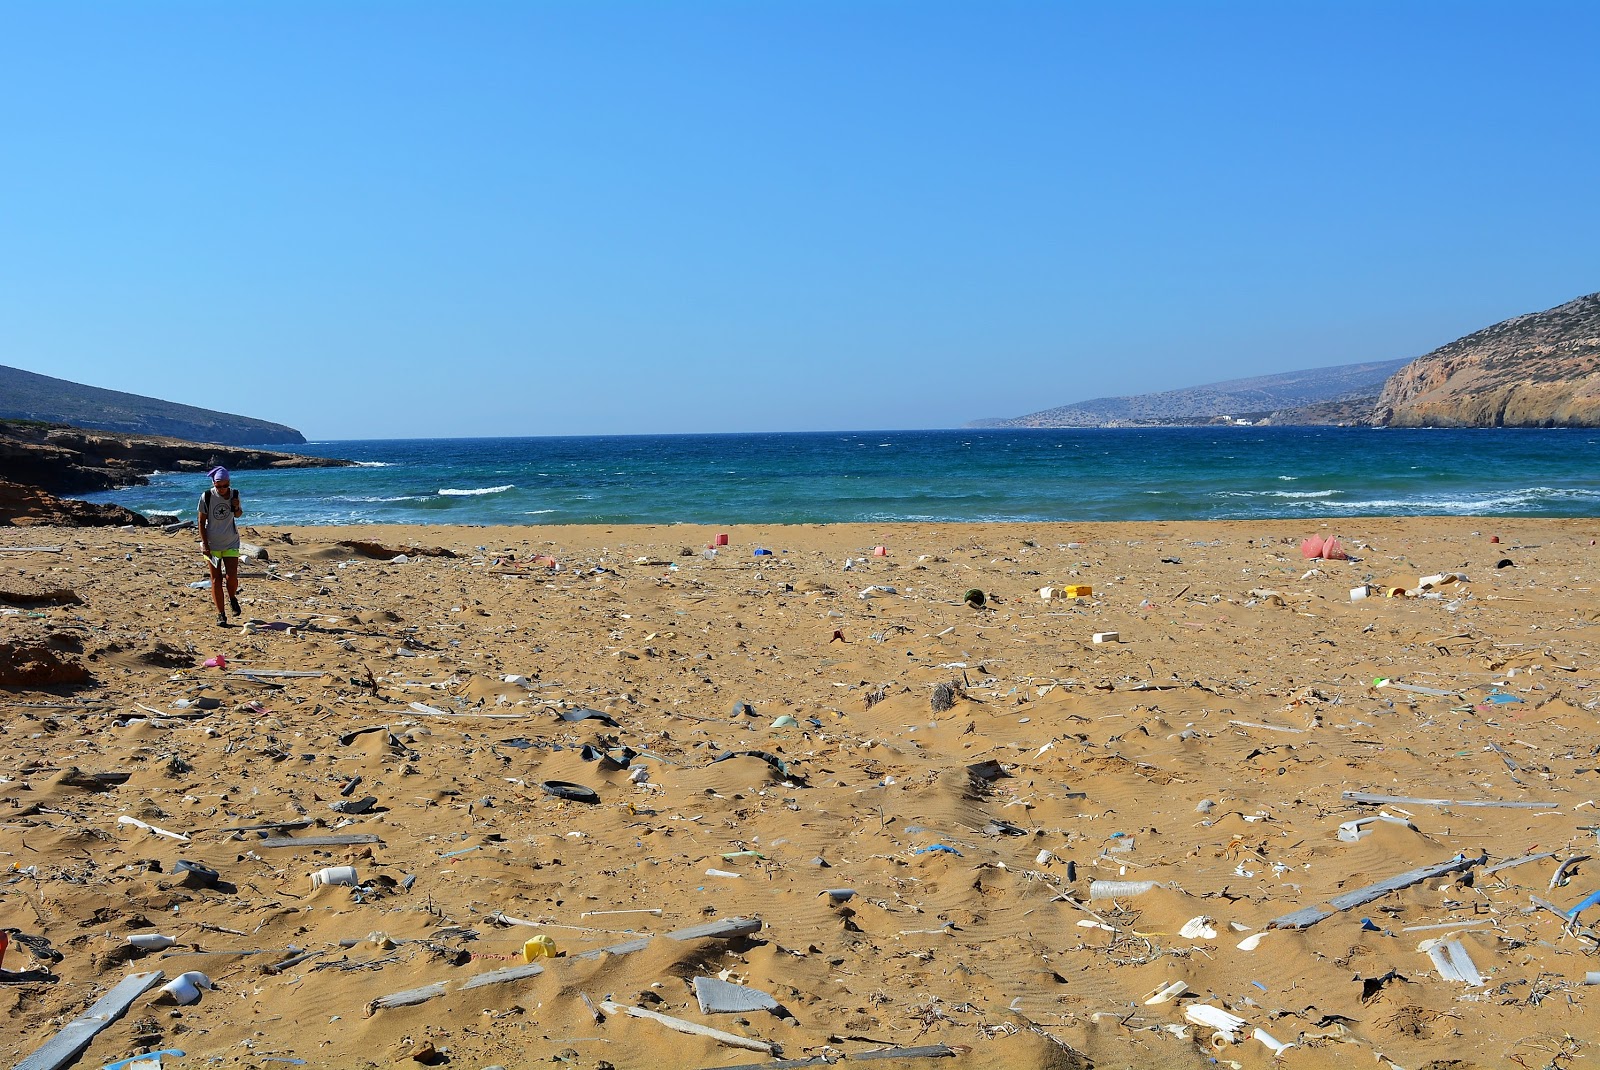 Vagia'in fotoğrafı i̇nce kahverengi kum yüzey ile